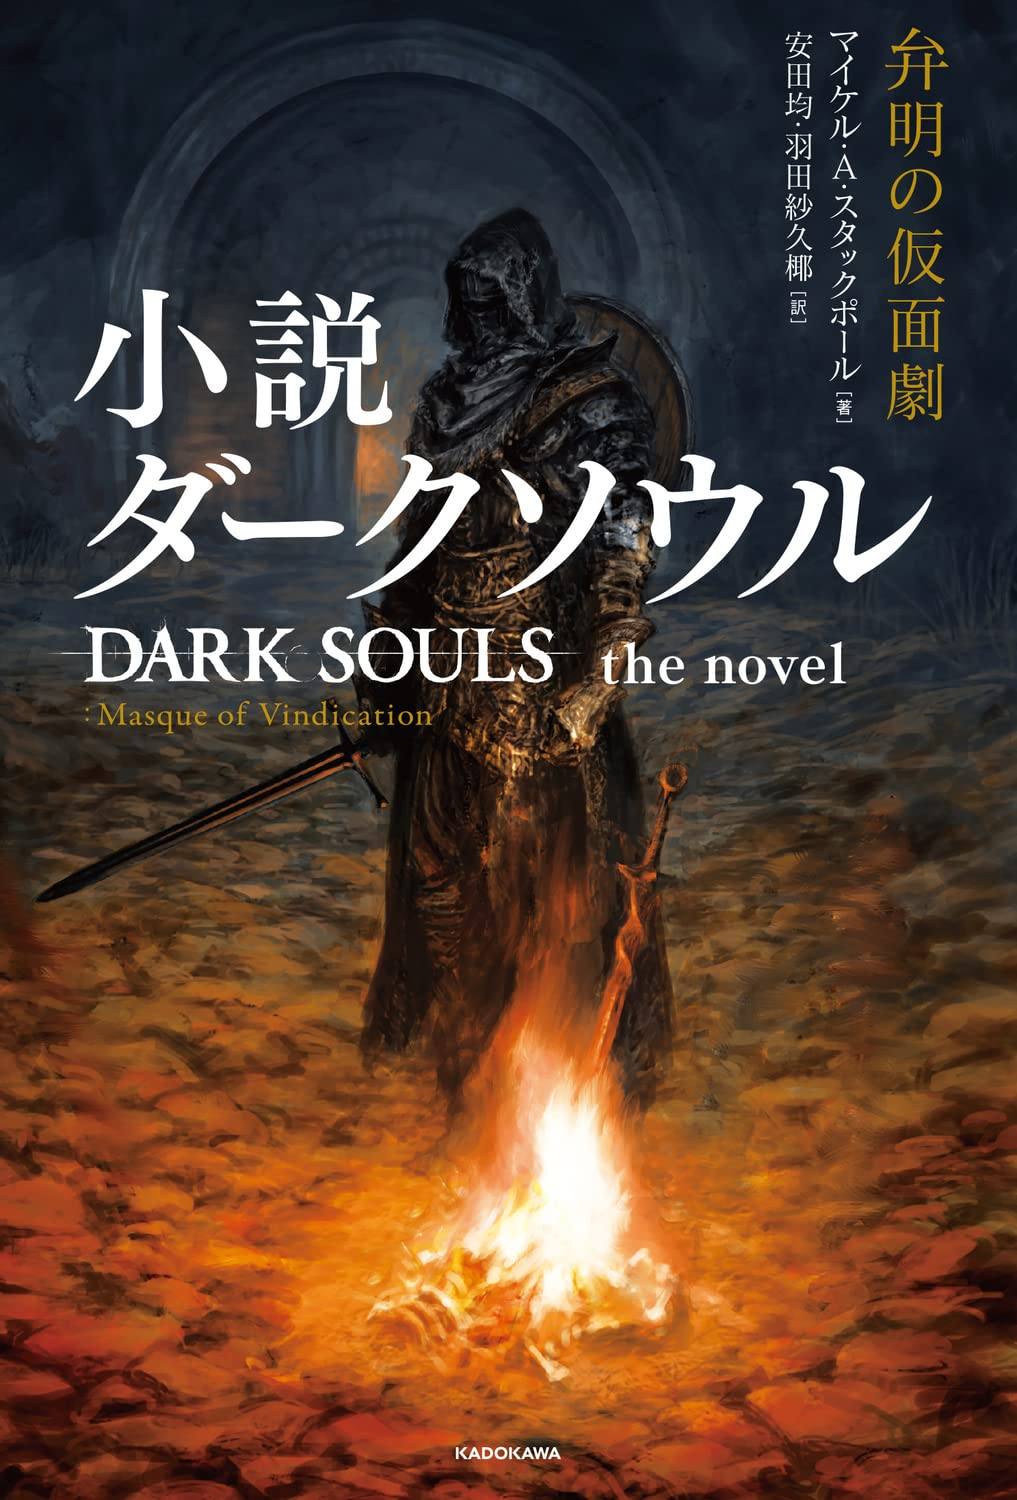 dark souls japanese cover